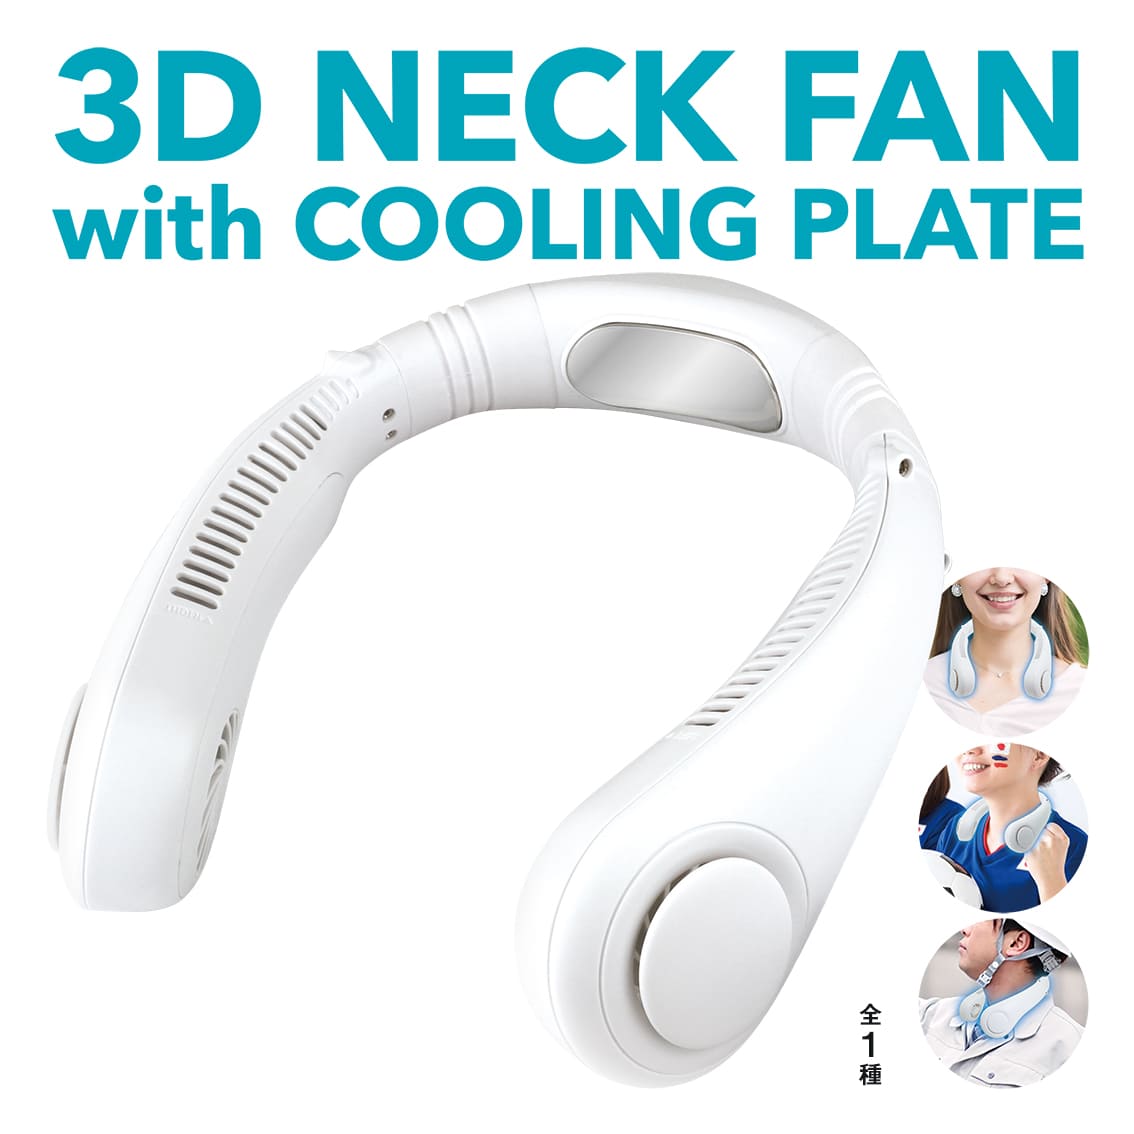 冷却プレート付きネックファン ネッククーラー 3D NECK FAN with COOLING PLATE WHITE ネックファン 首掛け扇風機 ハンズフリーファン